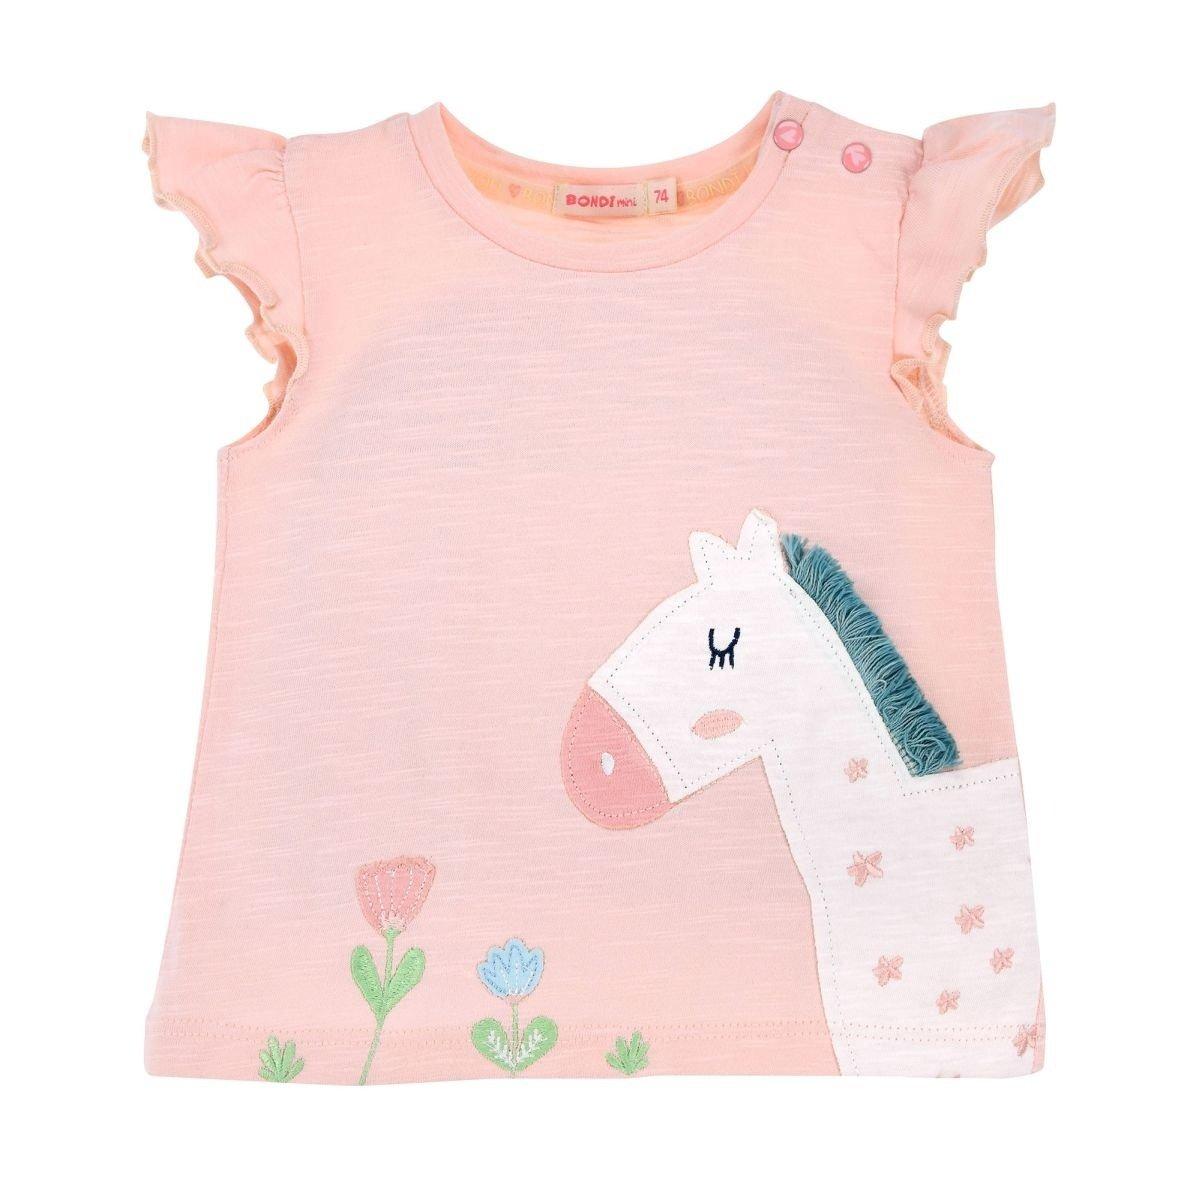 Kleinkinder T-shirt Little Horse Mädchen Rosa 80 von Bondi